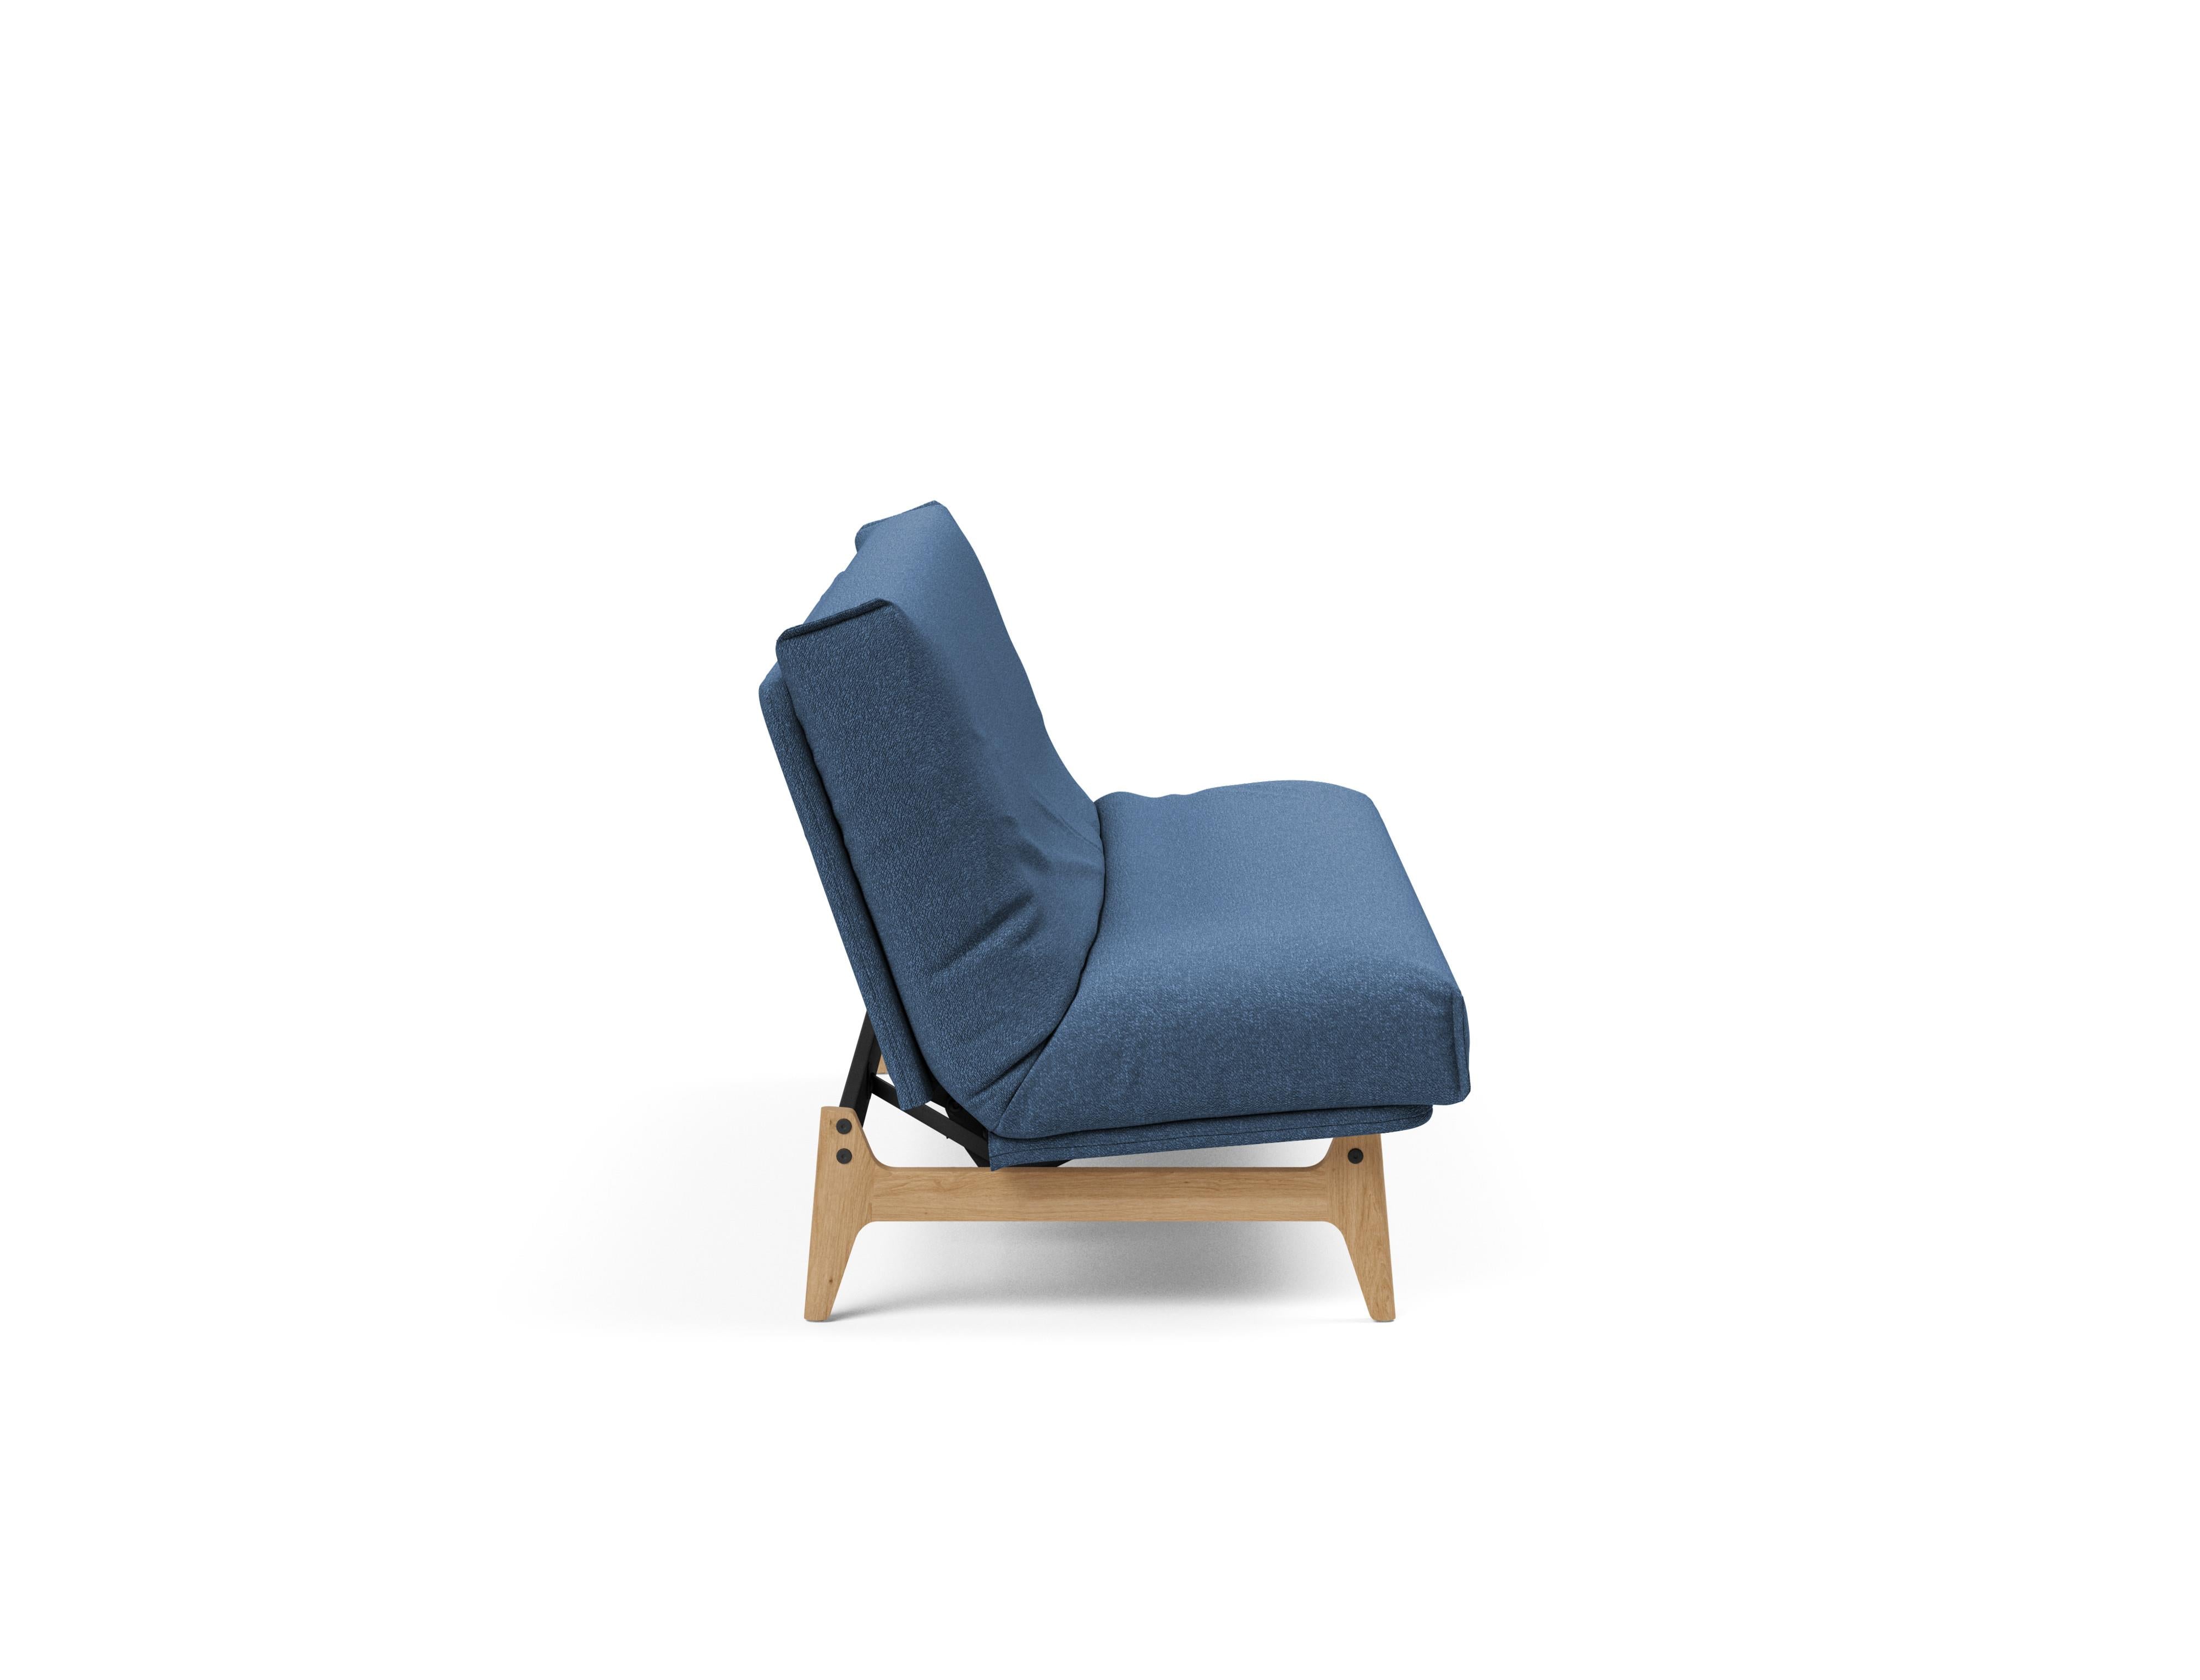 Aslak 120 Bettsofa Nordic Cover in Blau 537 präsentiert im Onlineshop von KAQTU Design AG. Bettsofa ist von Innovation Living